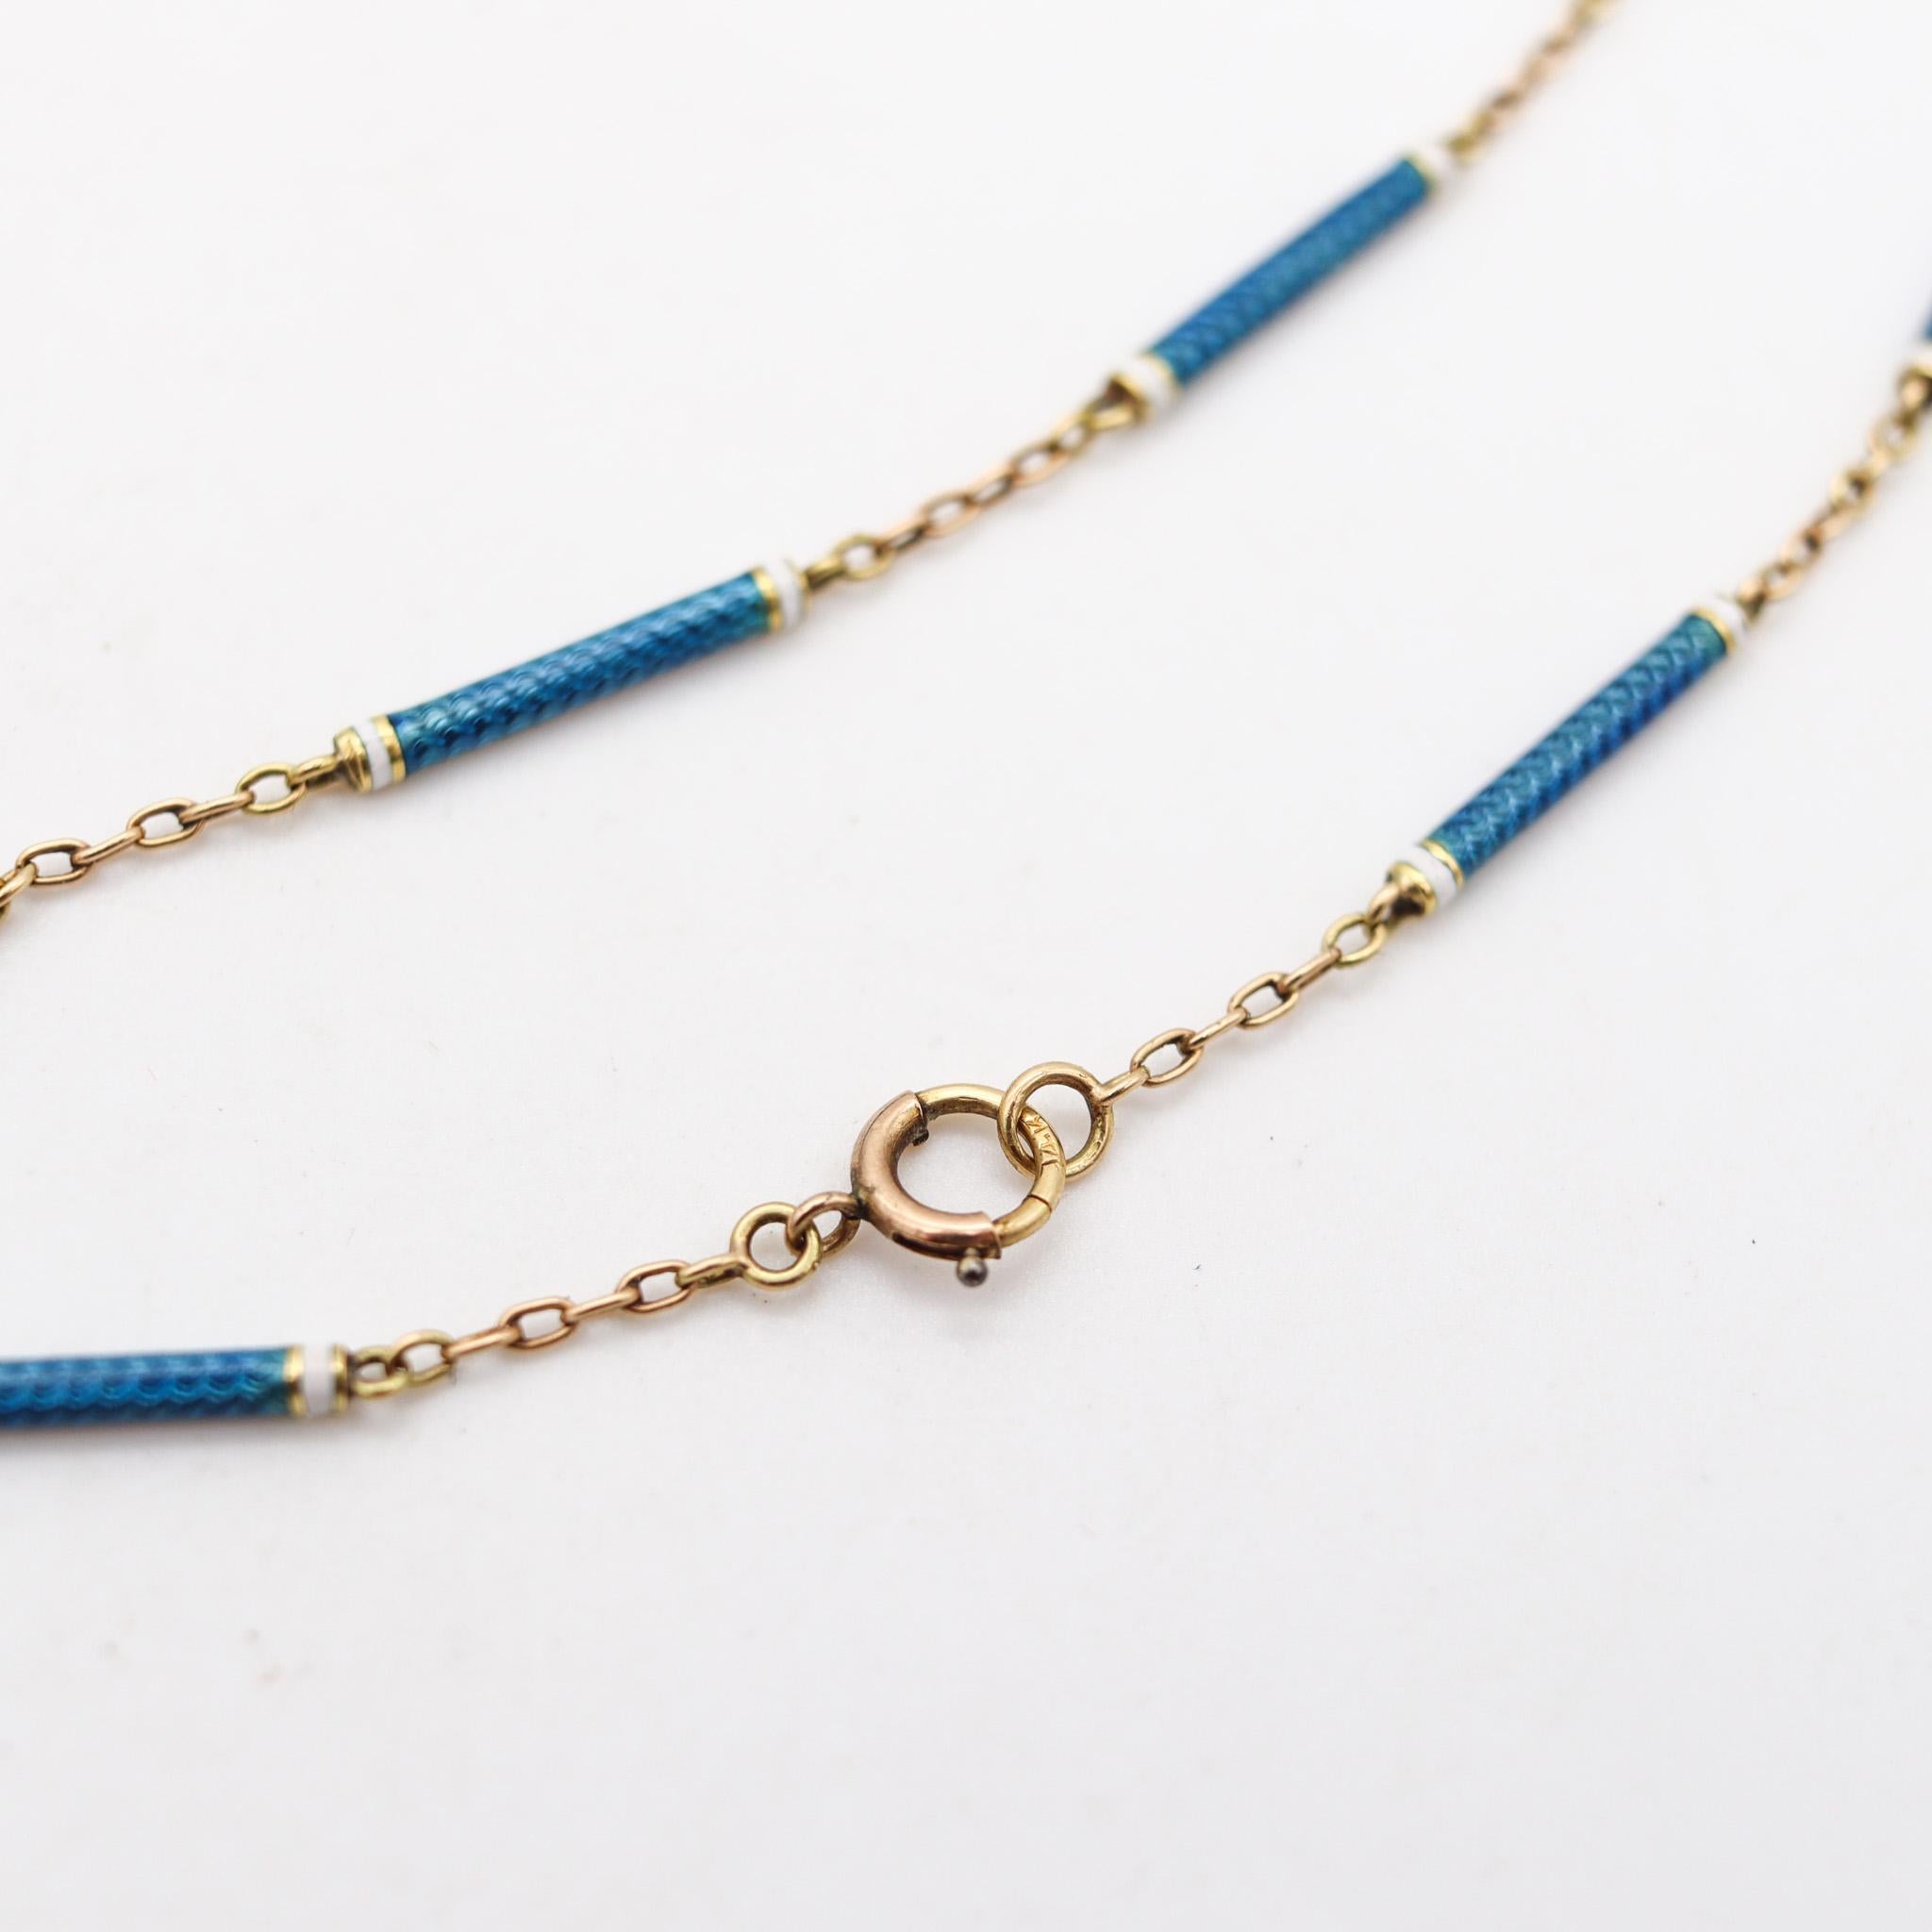 Women's Edwardian 1903 Swiss Necklace Watch In 14Kt Gold With Guilloché Blue Enamel For Sale